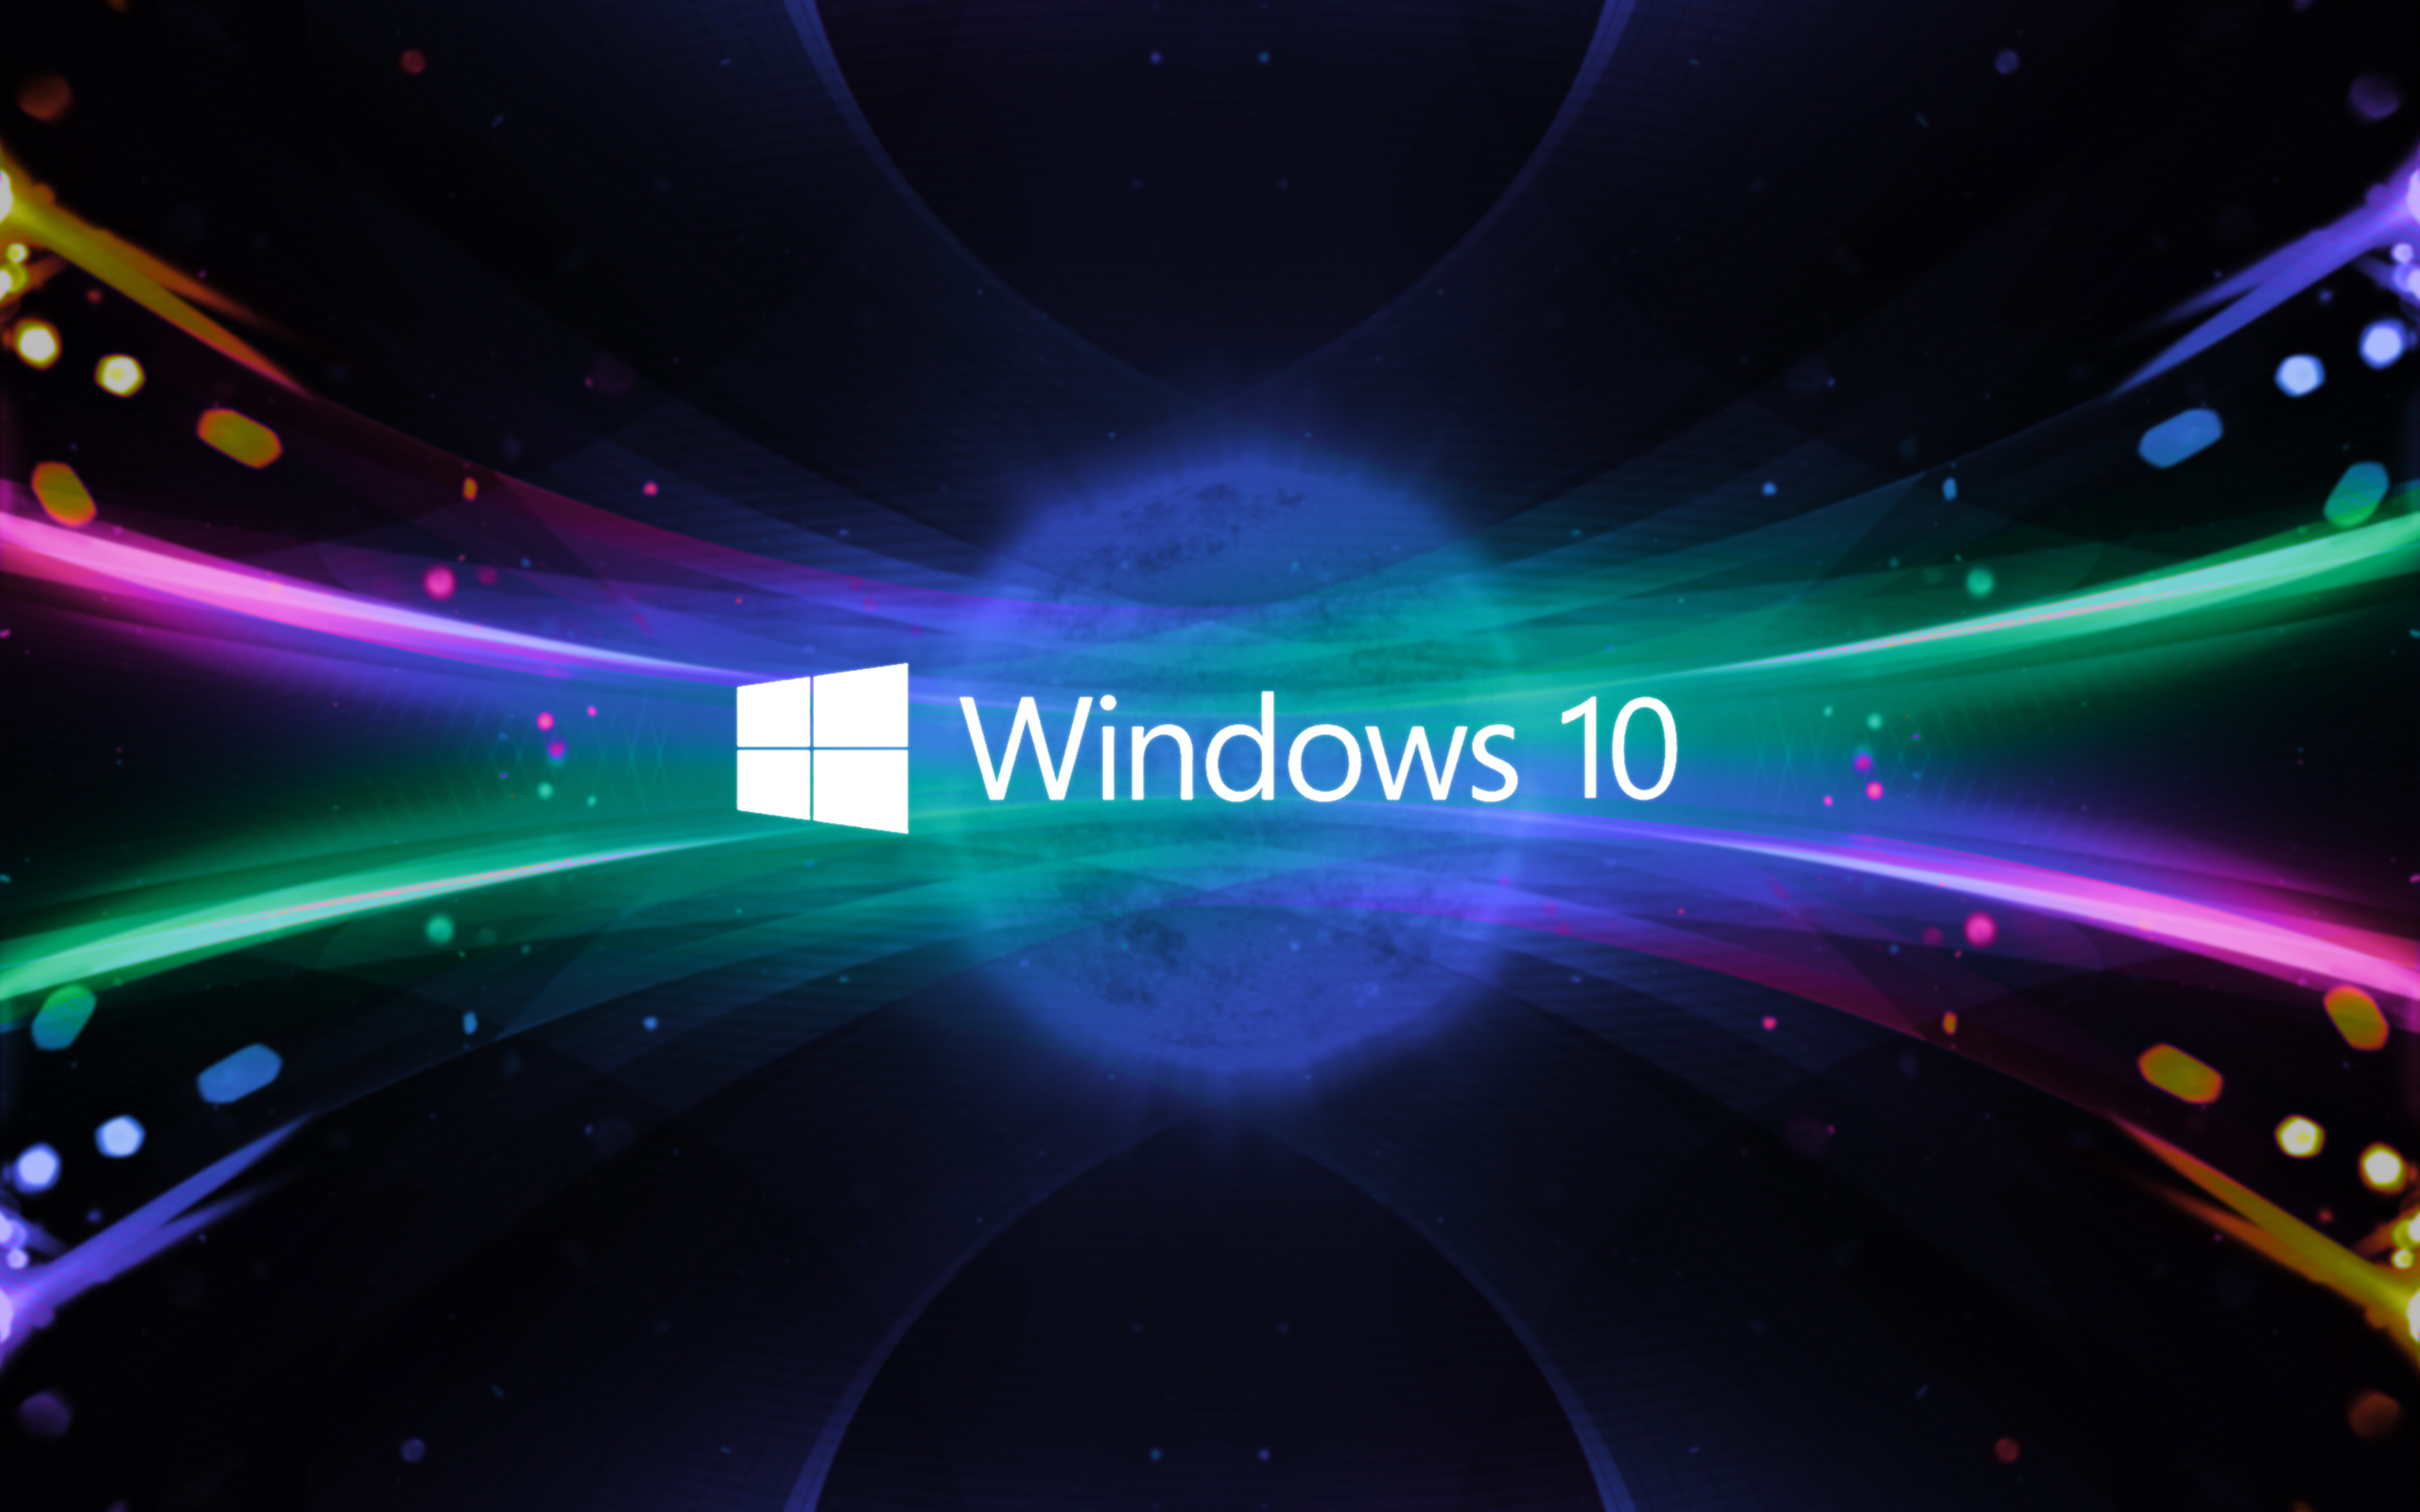 Tải ngay Windows 10 miễn phí và trải nghiệm công nghệ mới nhất của Microsoft. Hệ điều hành chạy nhanh hơn, mượt mà và rất đáng để sử dụng.